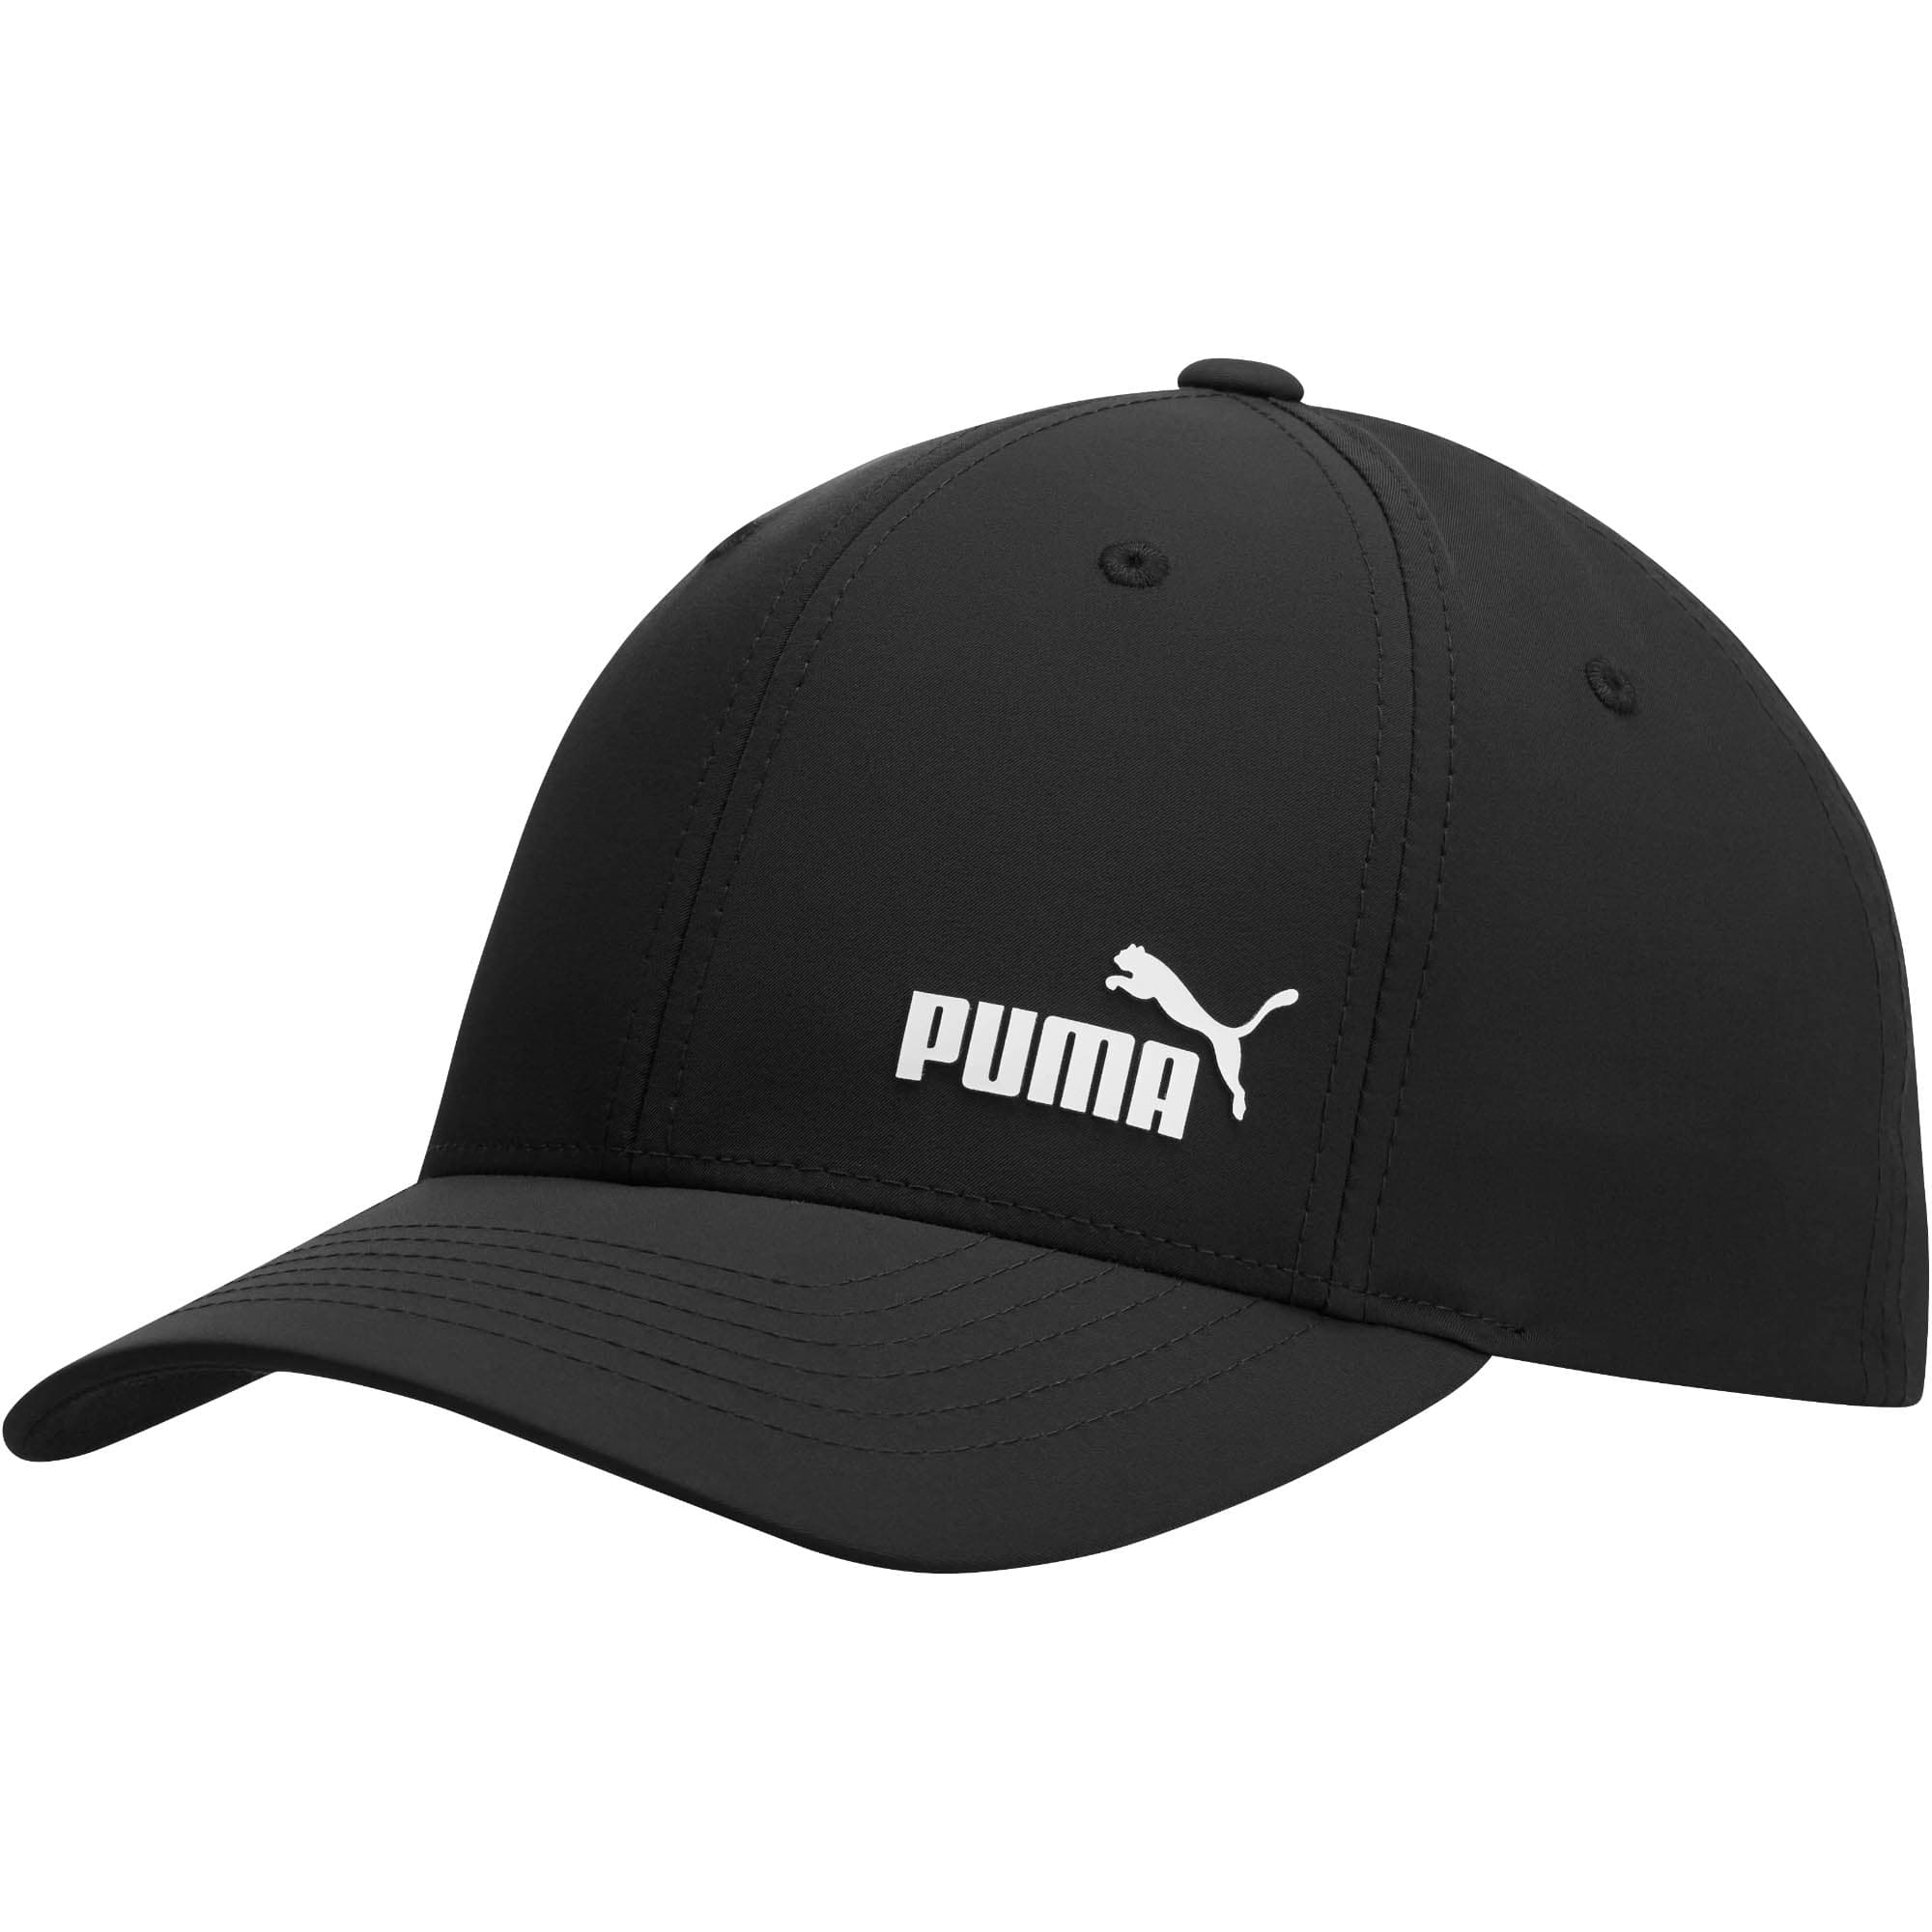 puma hat white